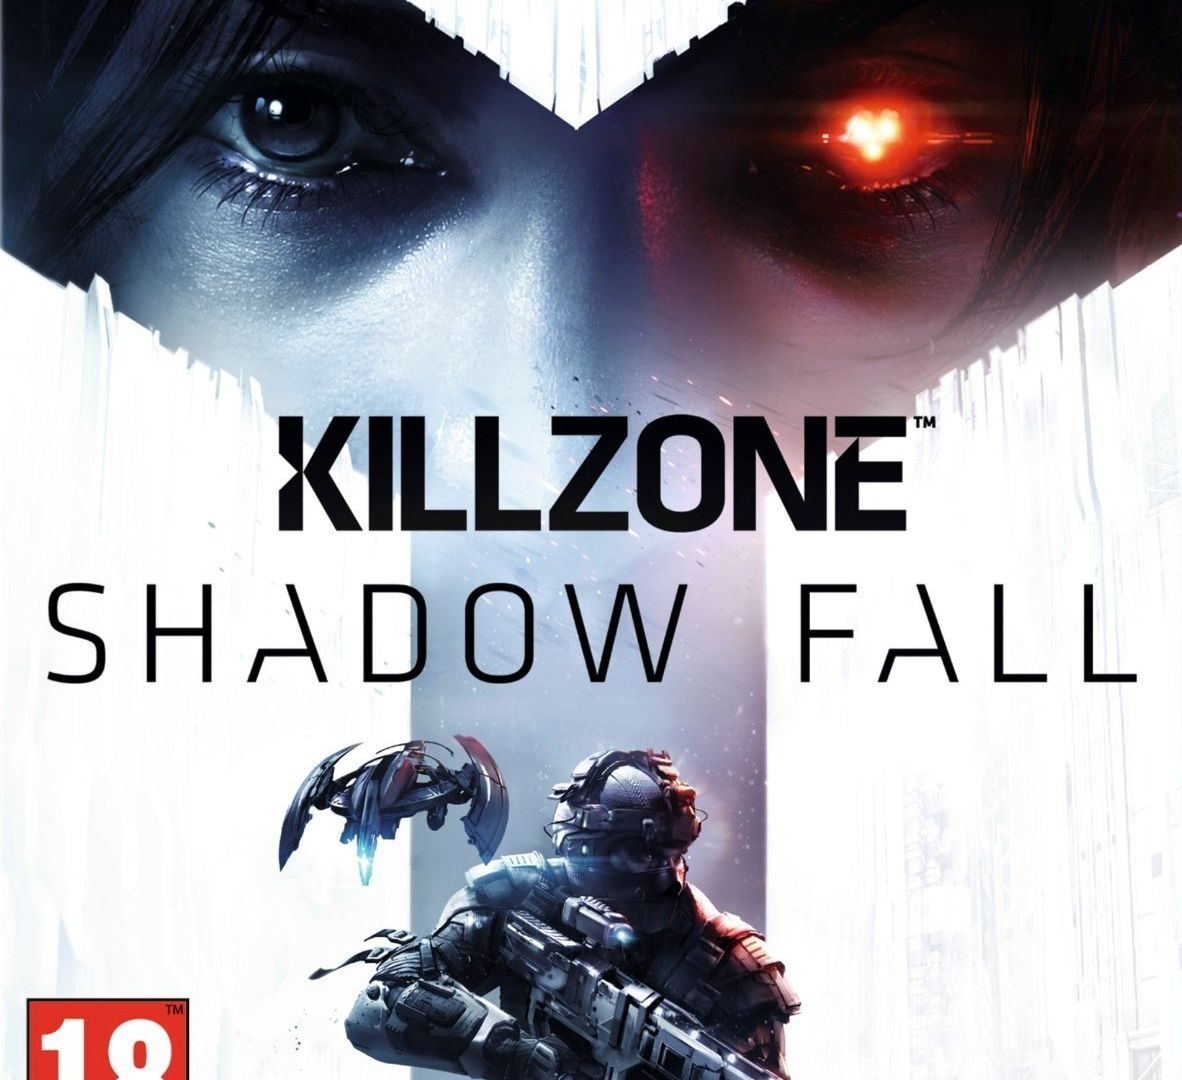 Killzone : Shadow Fall : Astuces et guides sur PS4 - jeuxvideo.com